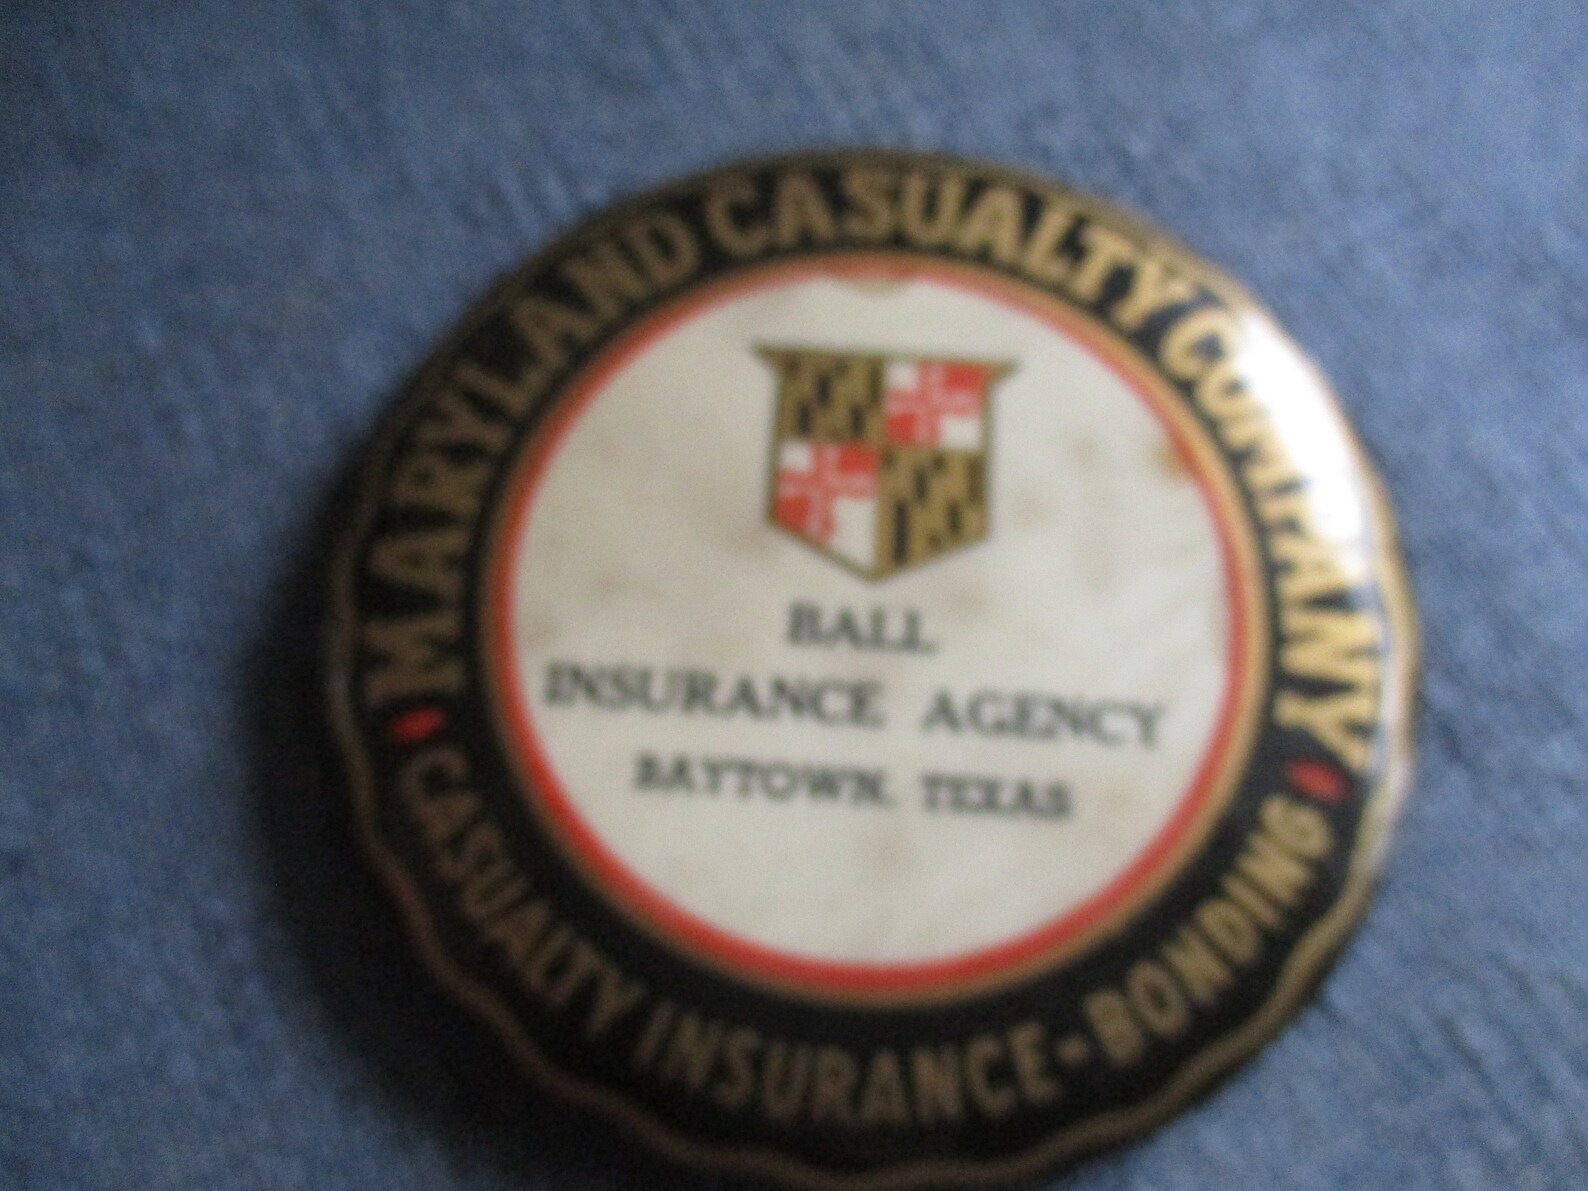 Baytown Texas Maryland Casualty Company Ball Insurance Agency | Etsy